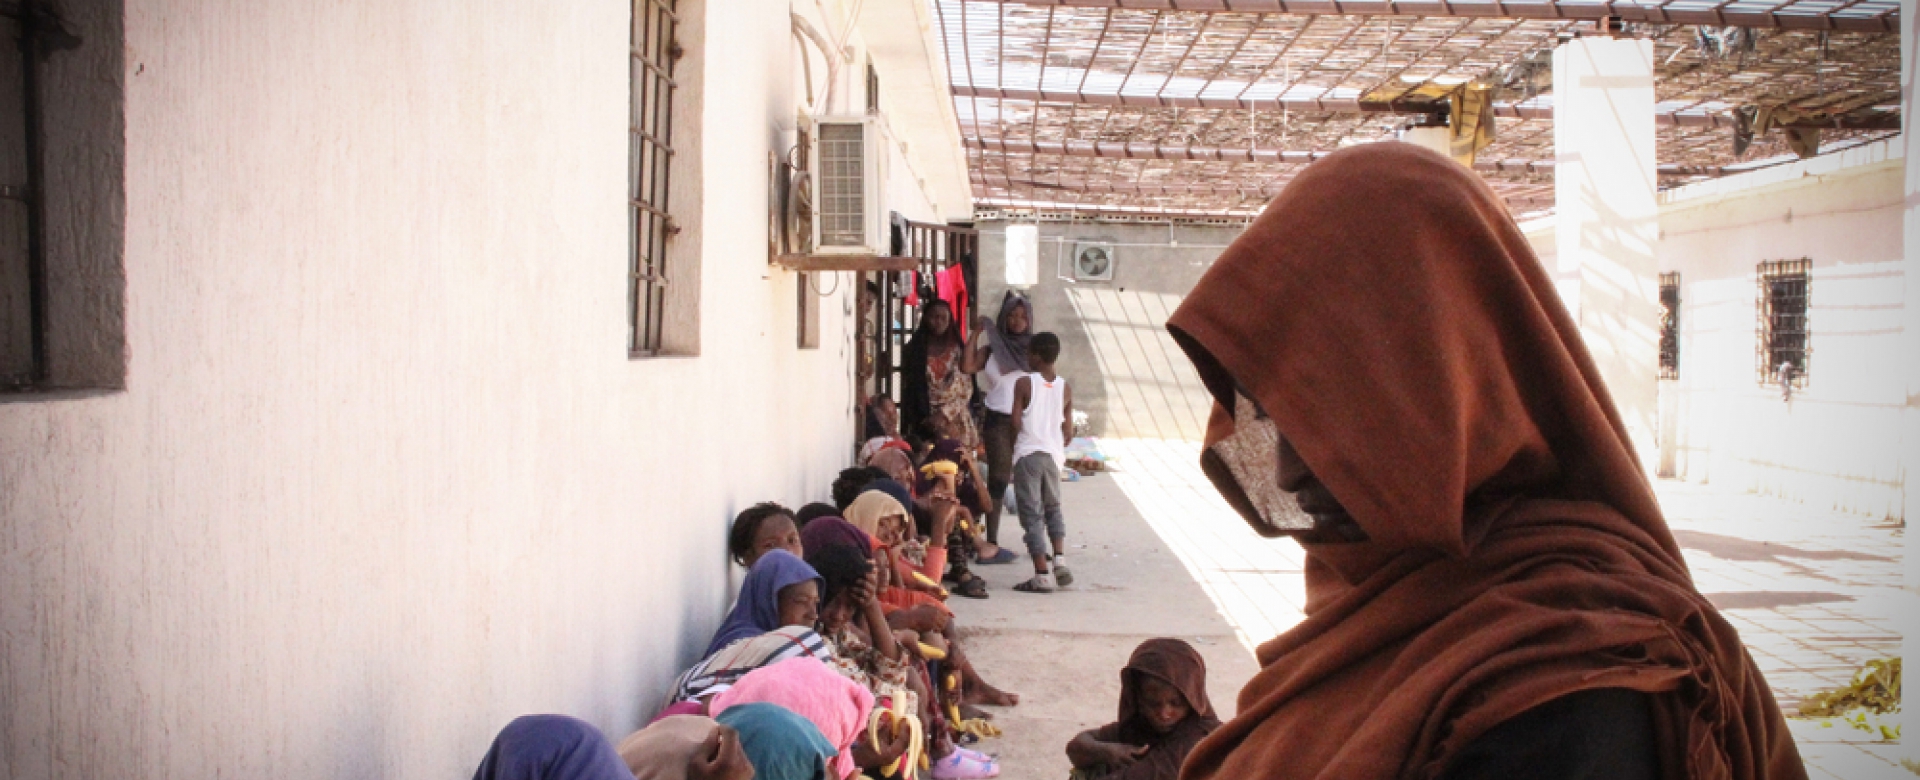 Des femmes et des enfants dans un centre de détention en Libye